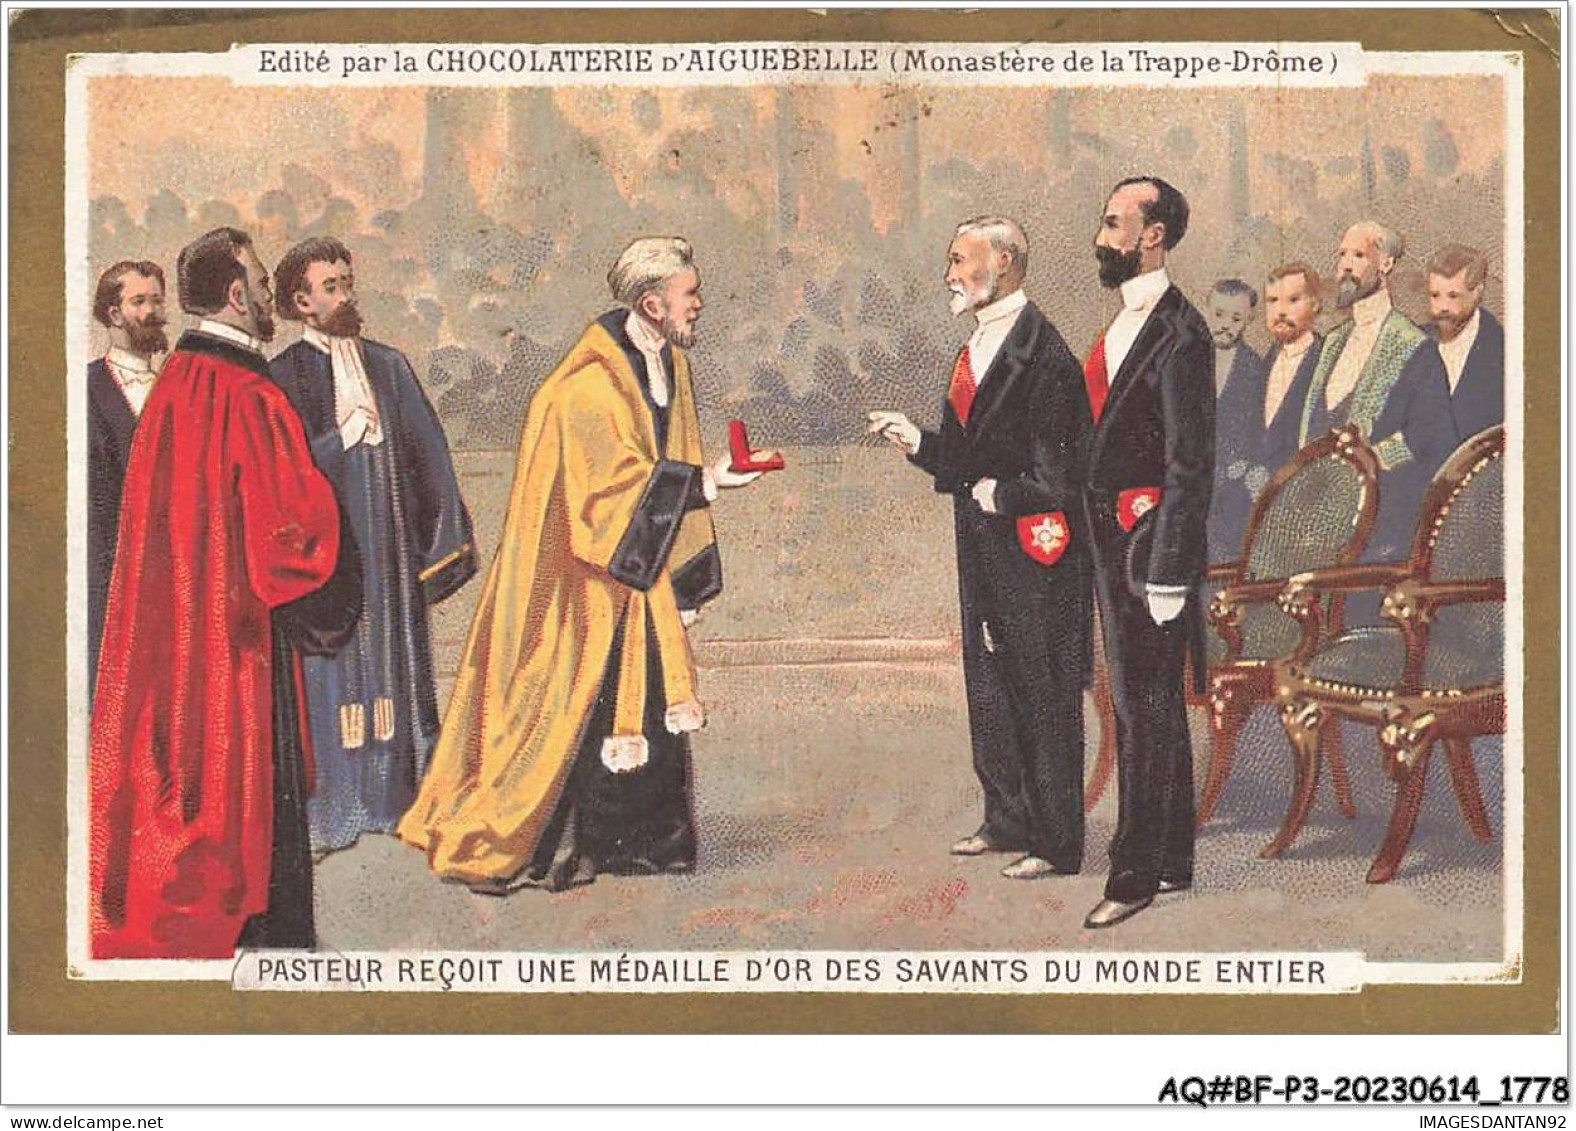 AQ#BFP3-CHROMOS-0887 - CHOCOLAT D'AIGUEBELLE - Pasteur Reçoit Une Médaille D'or Des Savants Du Monde Entier - Aiguebelle